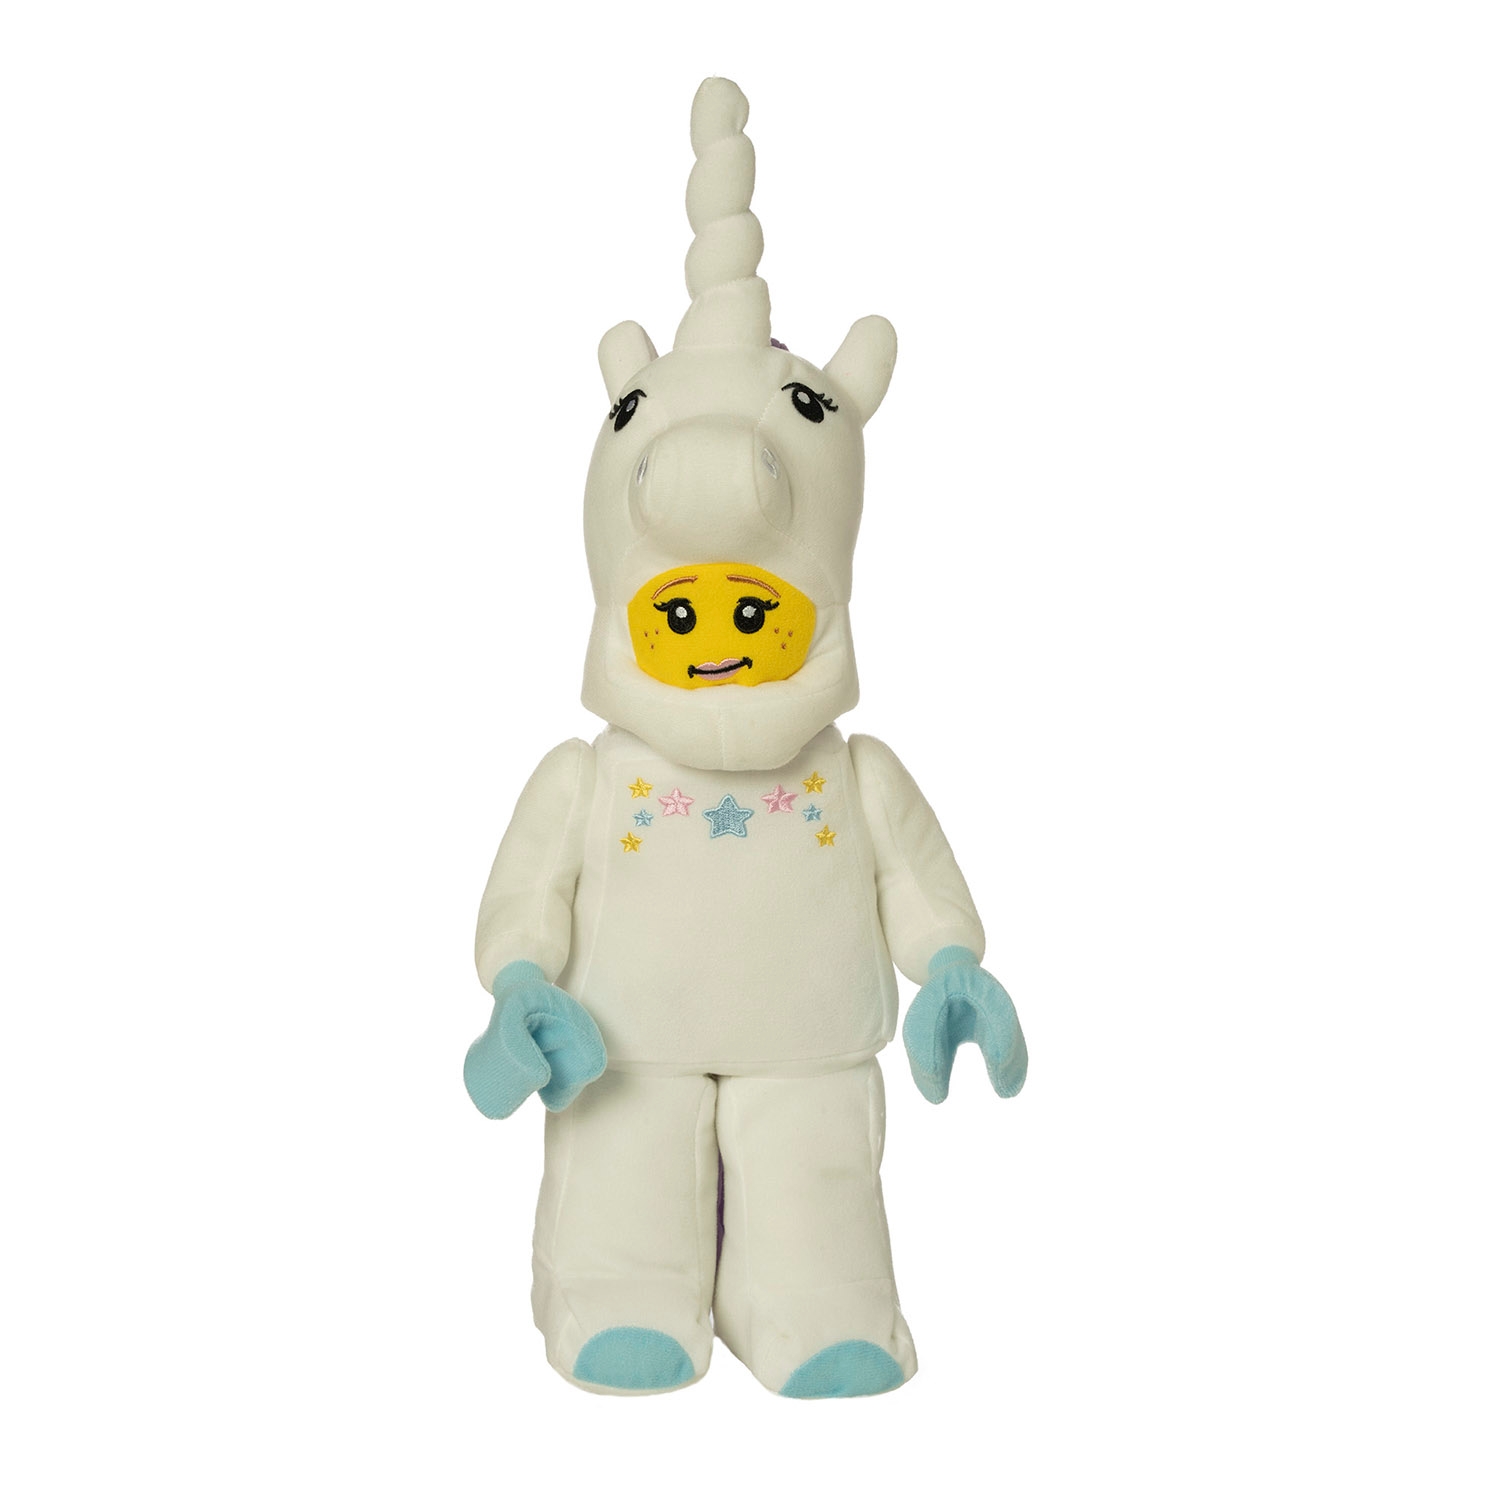 LEGO Minifigures Series 13 Unicorn Girl